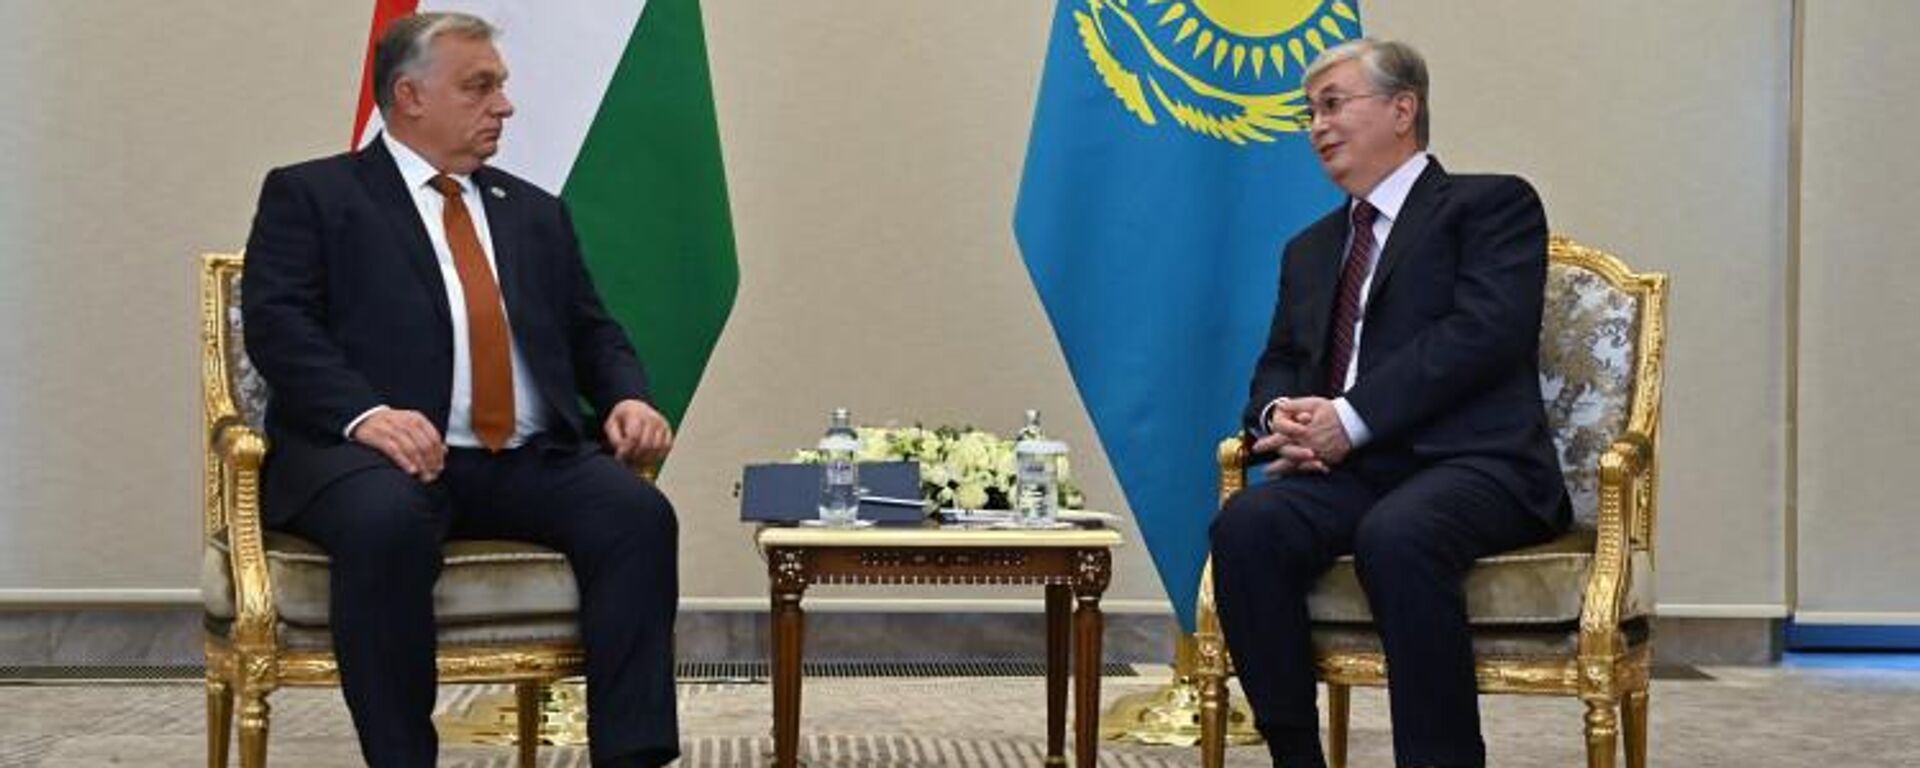 Токаев встретился с премьером Венгрии на полях саммита в Самарканде  - Sputnik Казахстан, 1920, 10.11.2022